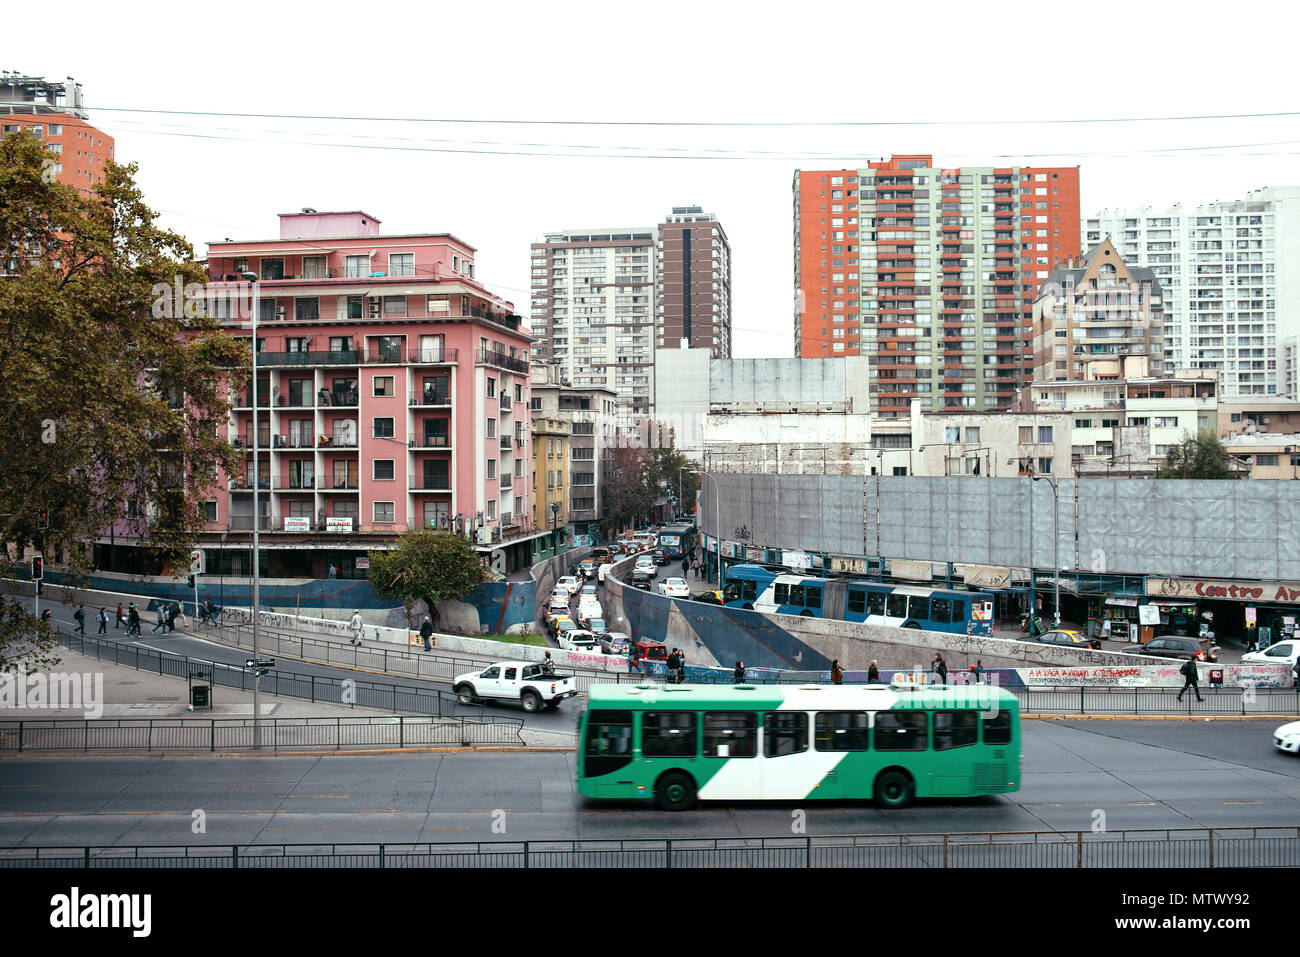 Enel tecnología de autobuses eléctricos: Metbus transporte público. Vista del centro de Santiago desde el cerro de Santa Lucía, Santiago, Chile. Mayo de 2018 Foto de stock